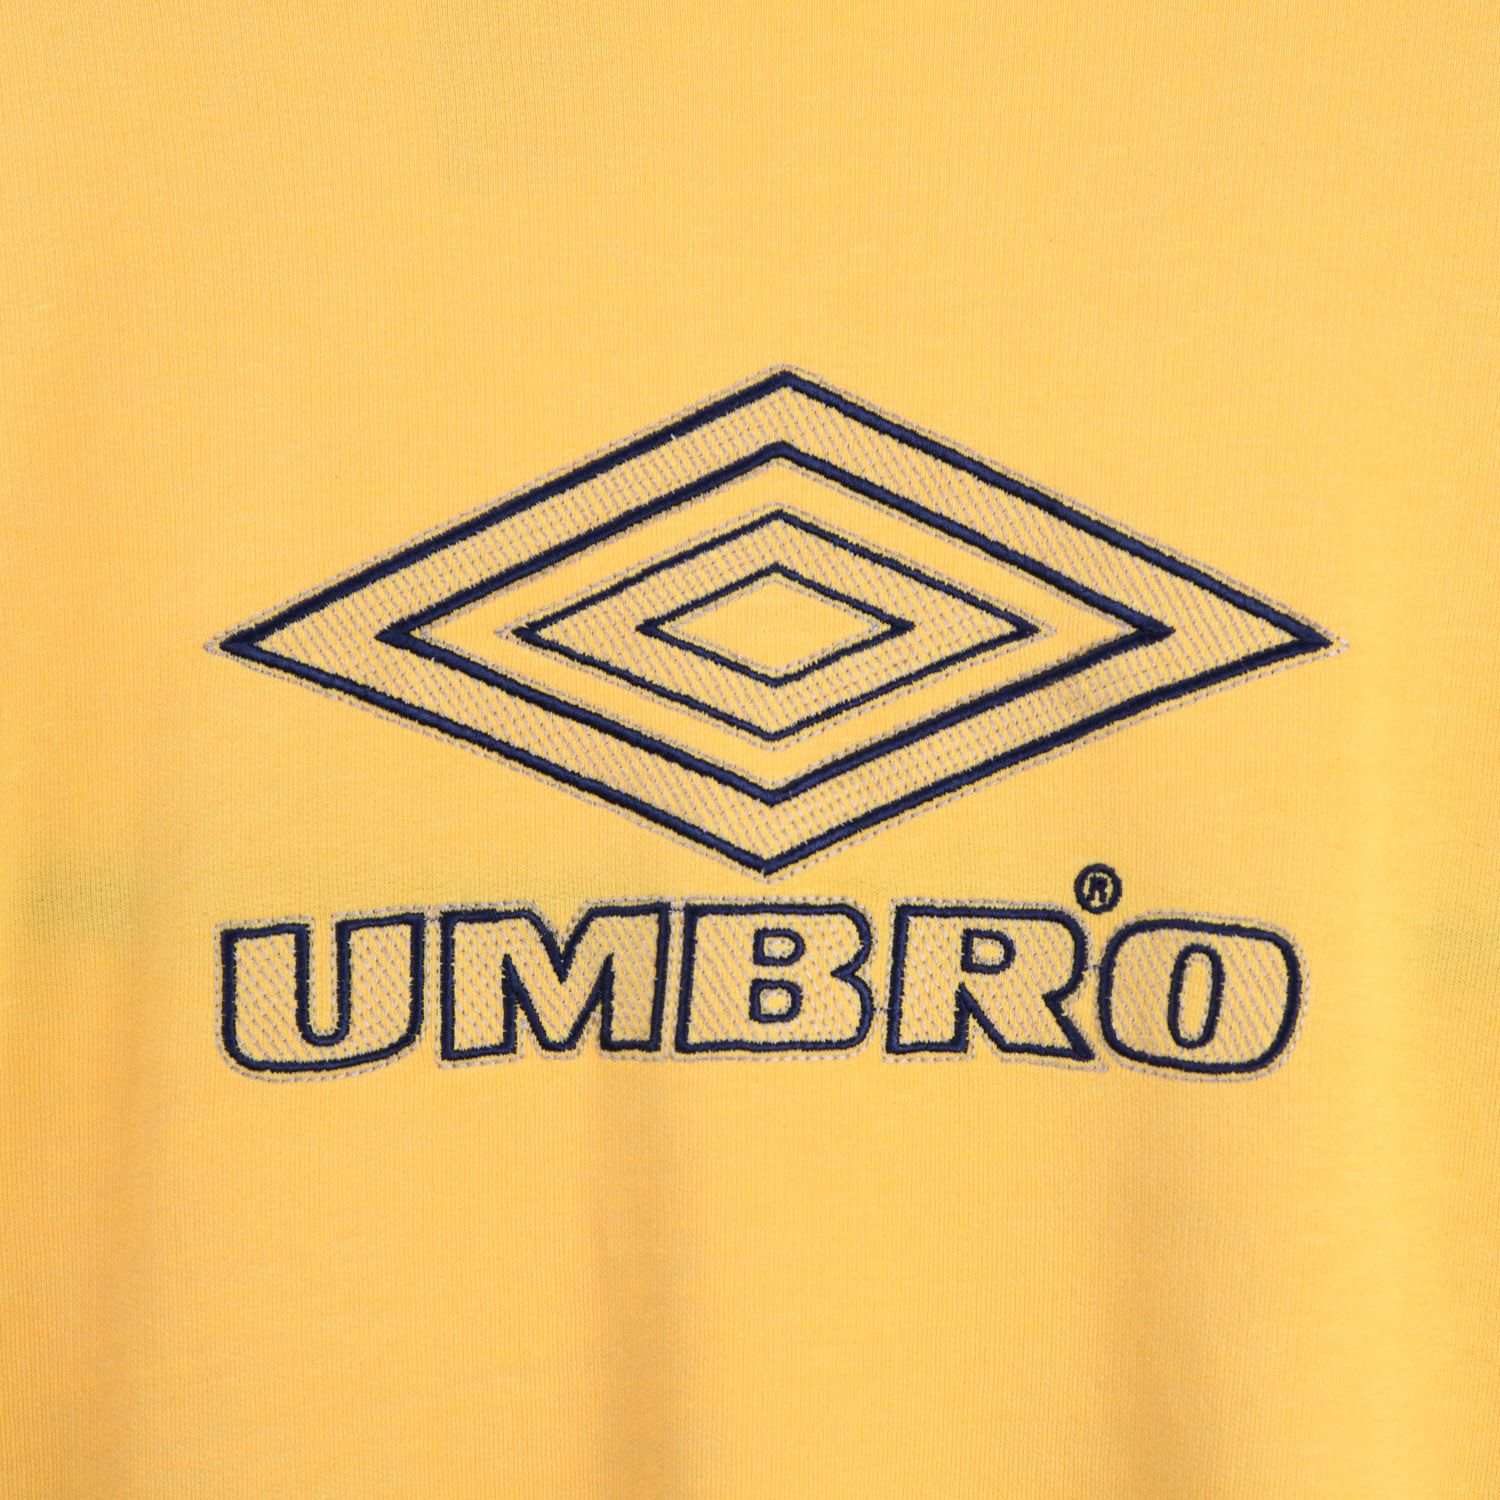 Umbro 1990s Yellow Sweatshirt